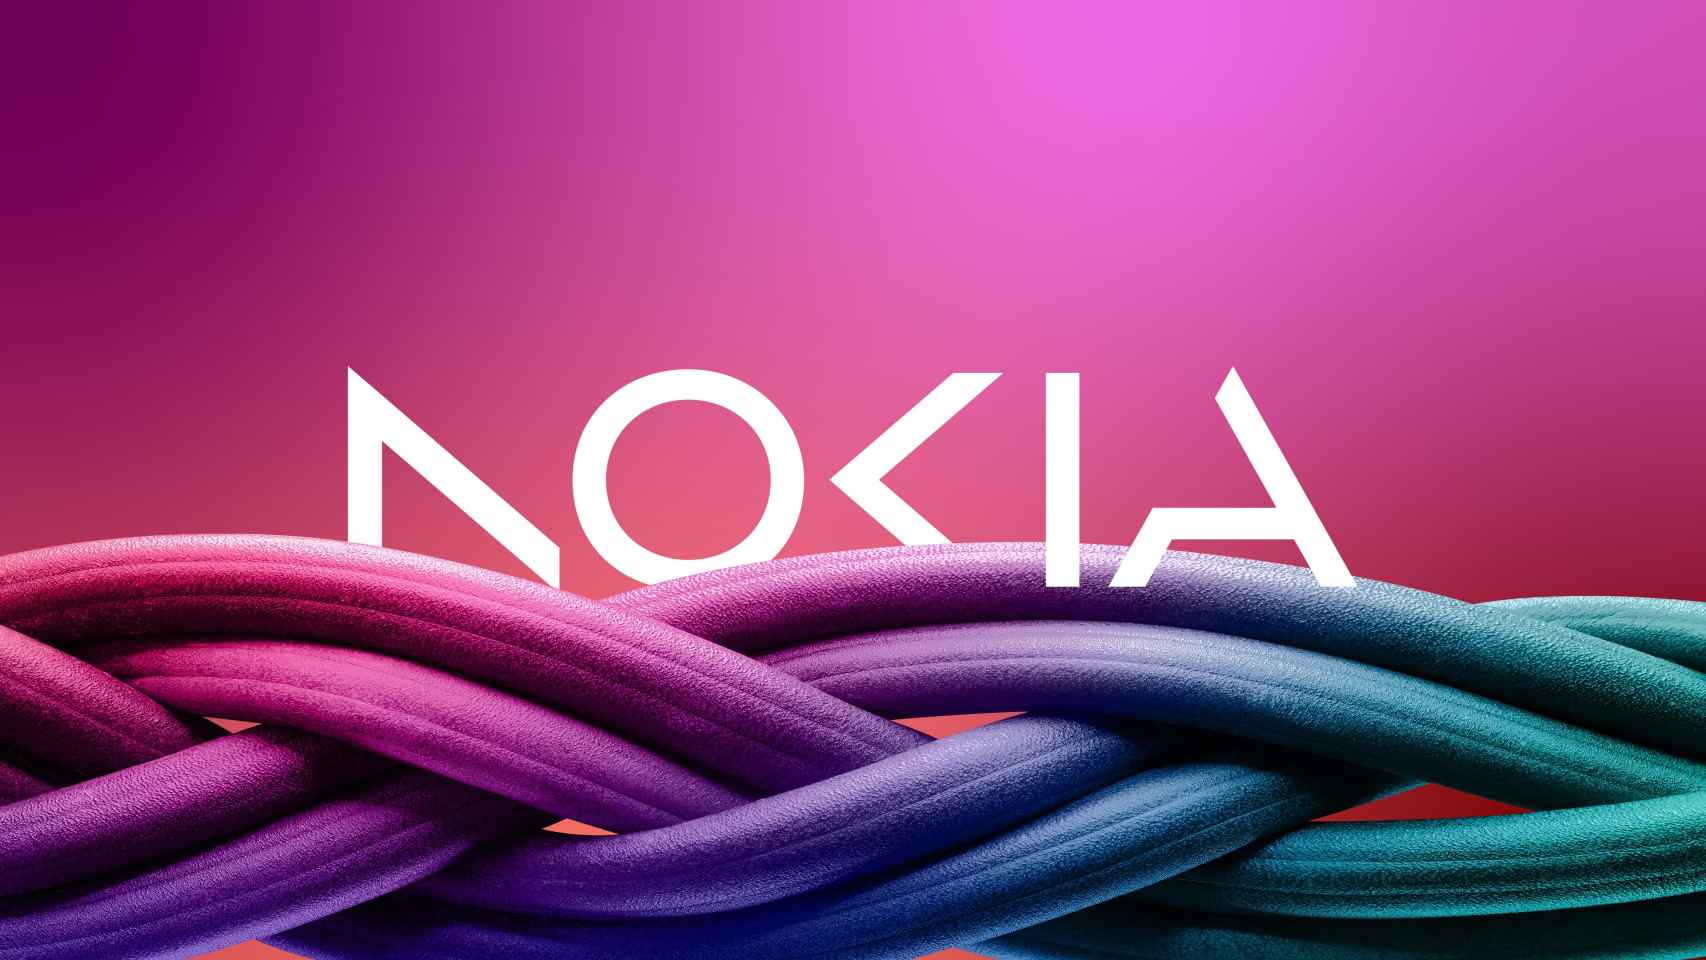 La Nokia de las redes cambió de imagen hace poco para diferenciarse de la de los móviles